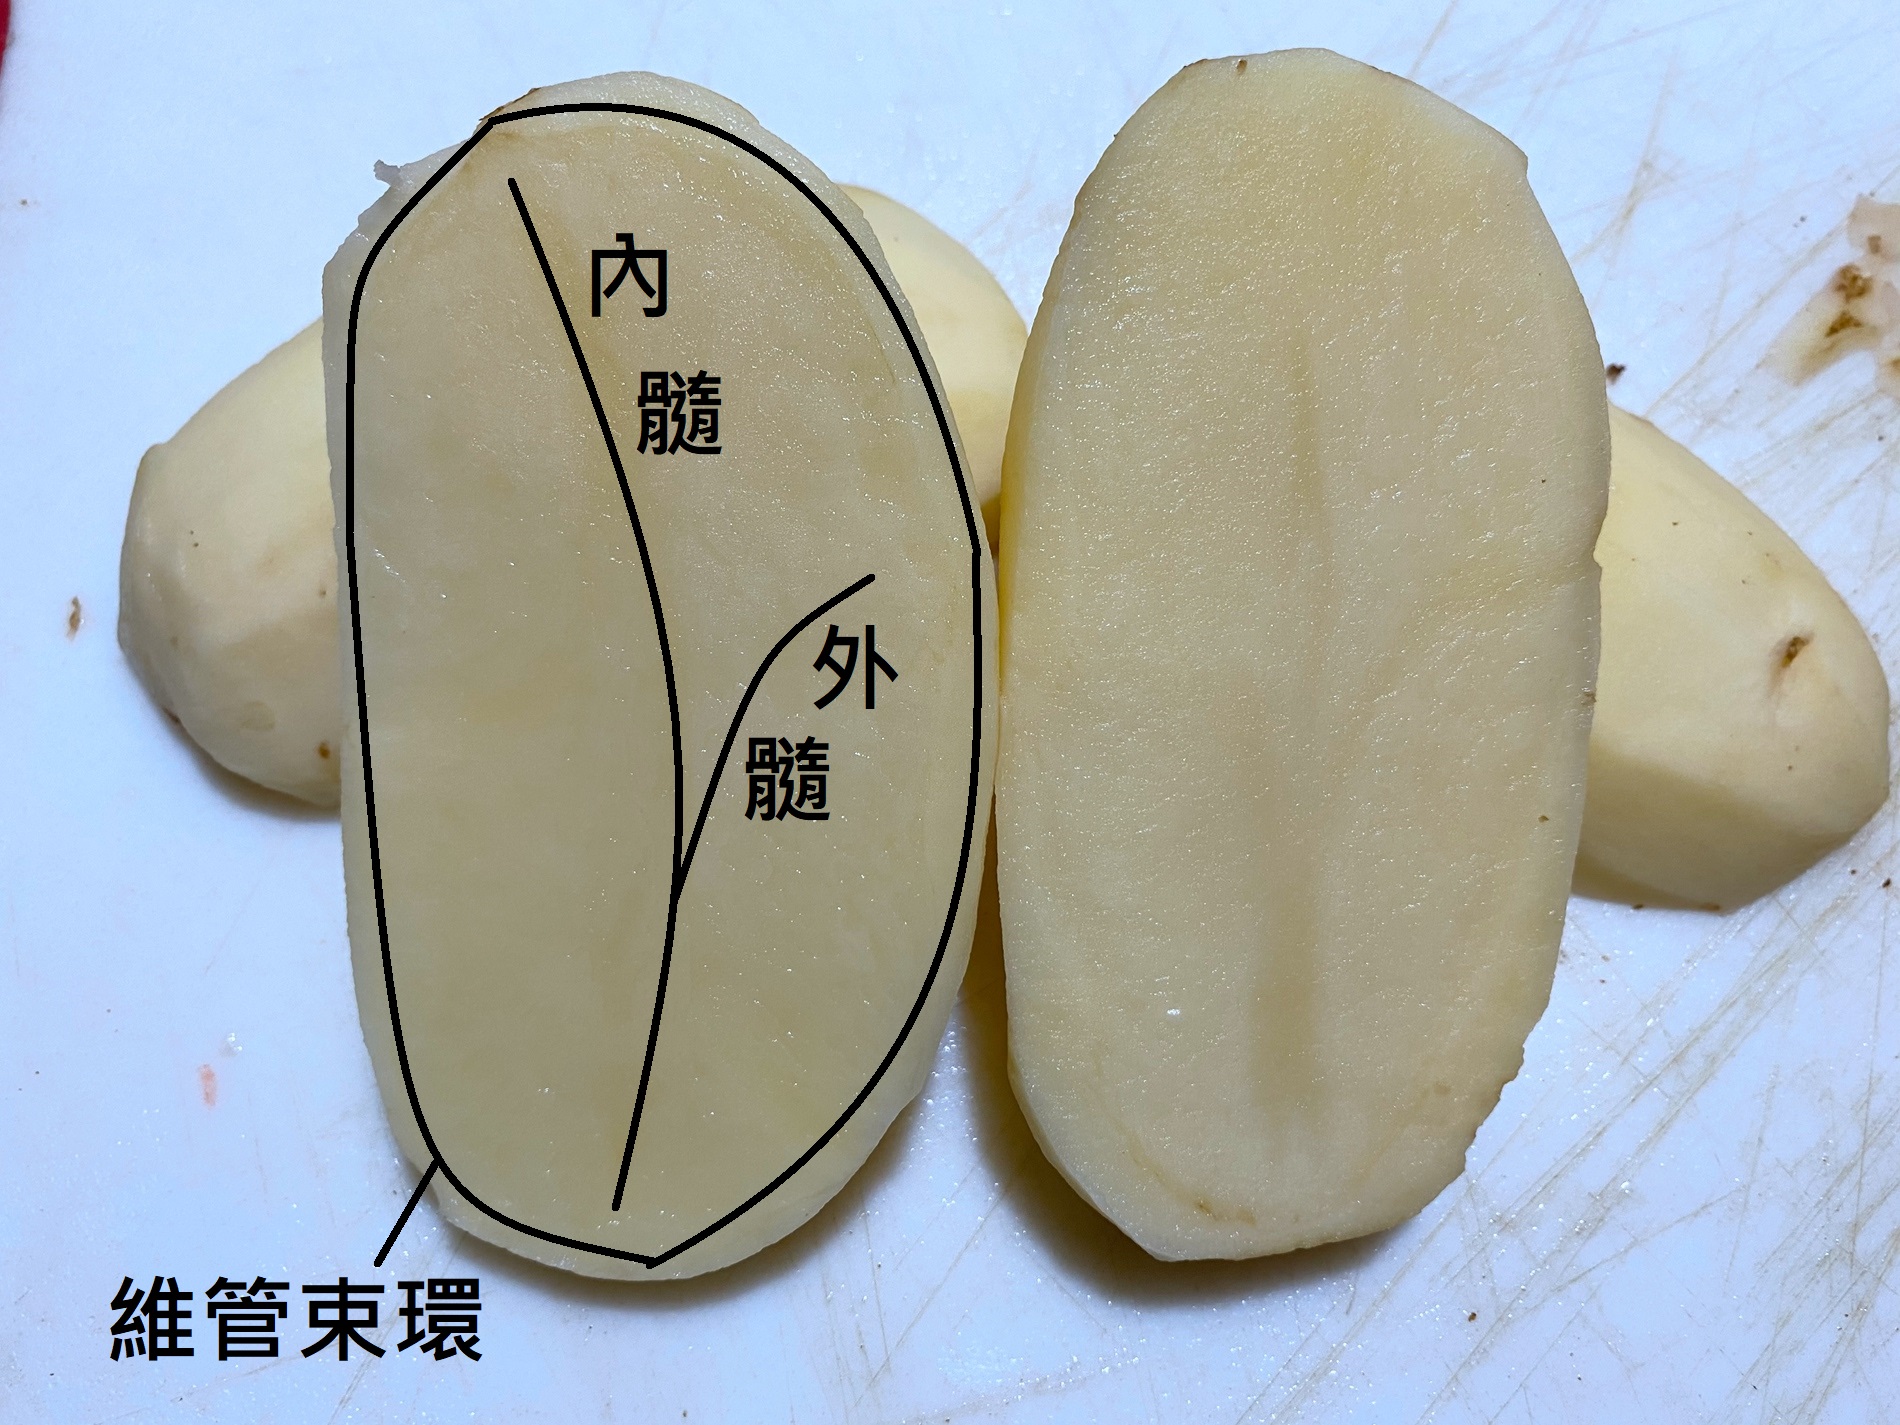 馬鈴薯的維管束環、外髓和內髓。